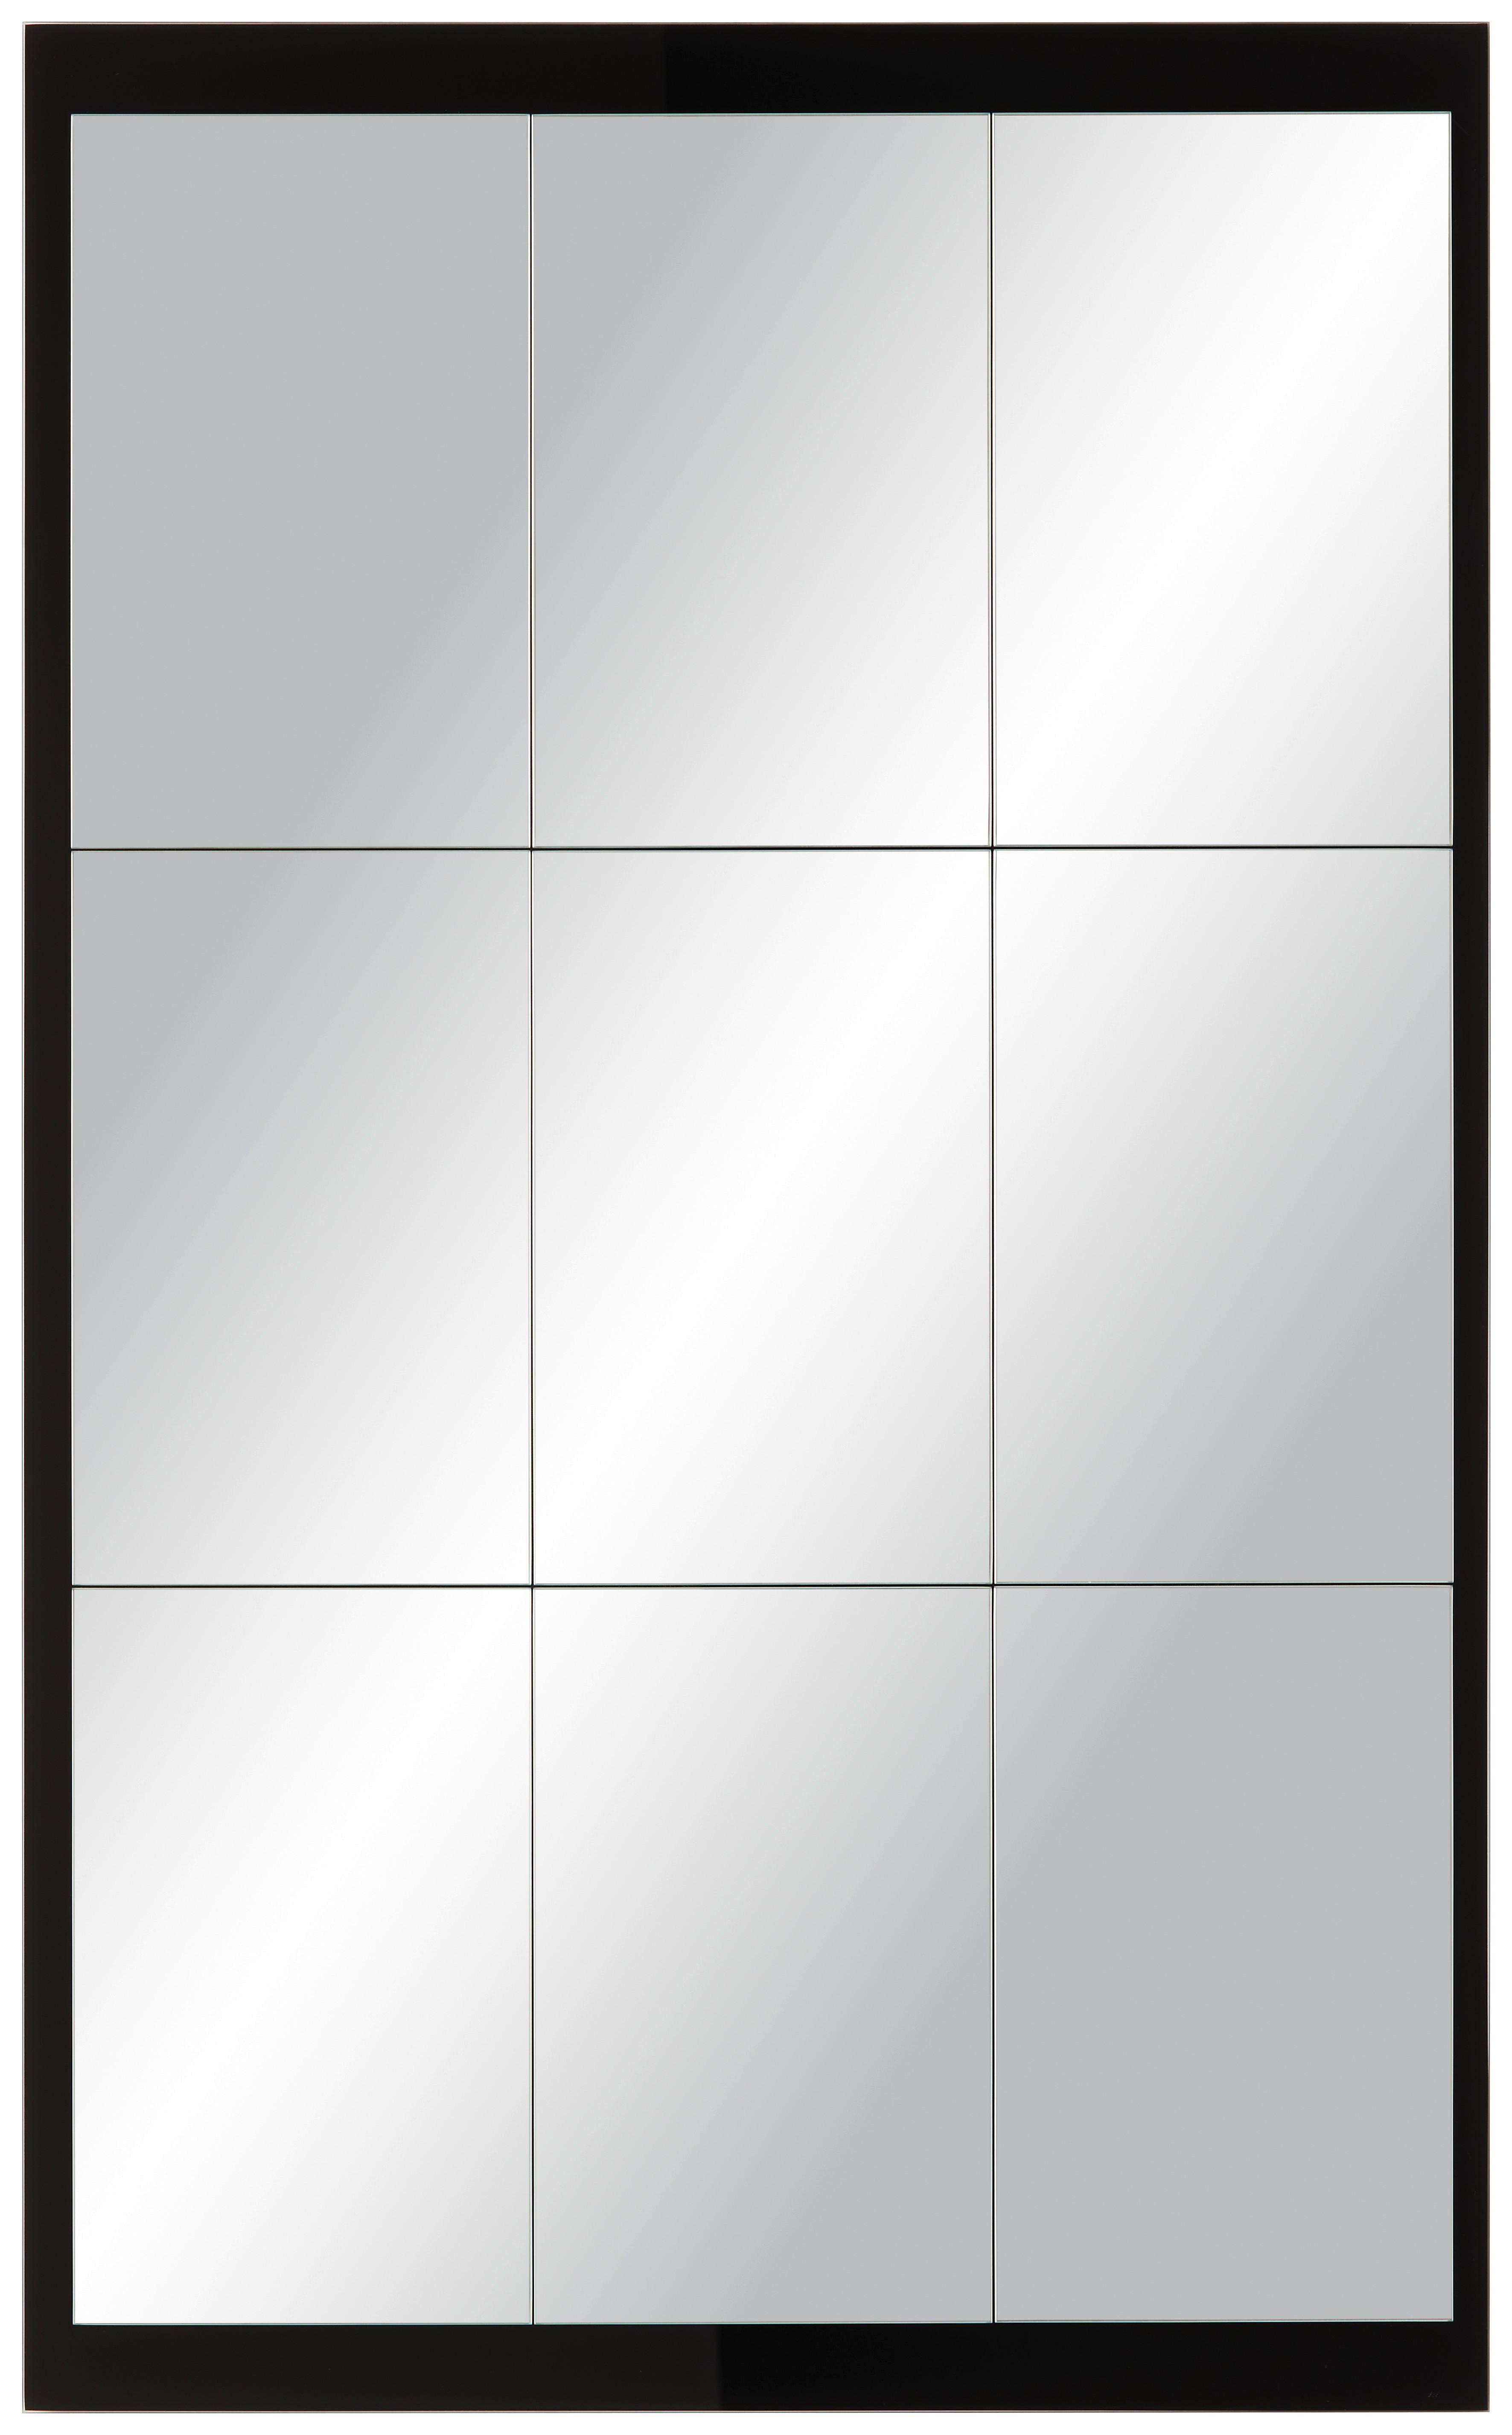 Nástěnné Zrcadlo Industrial I -Exklusiv- - černá, Moderní, sklo (64/104cm) - Modern Living